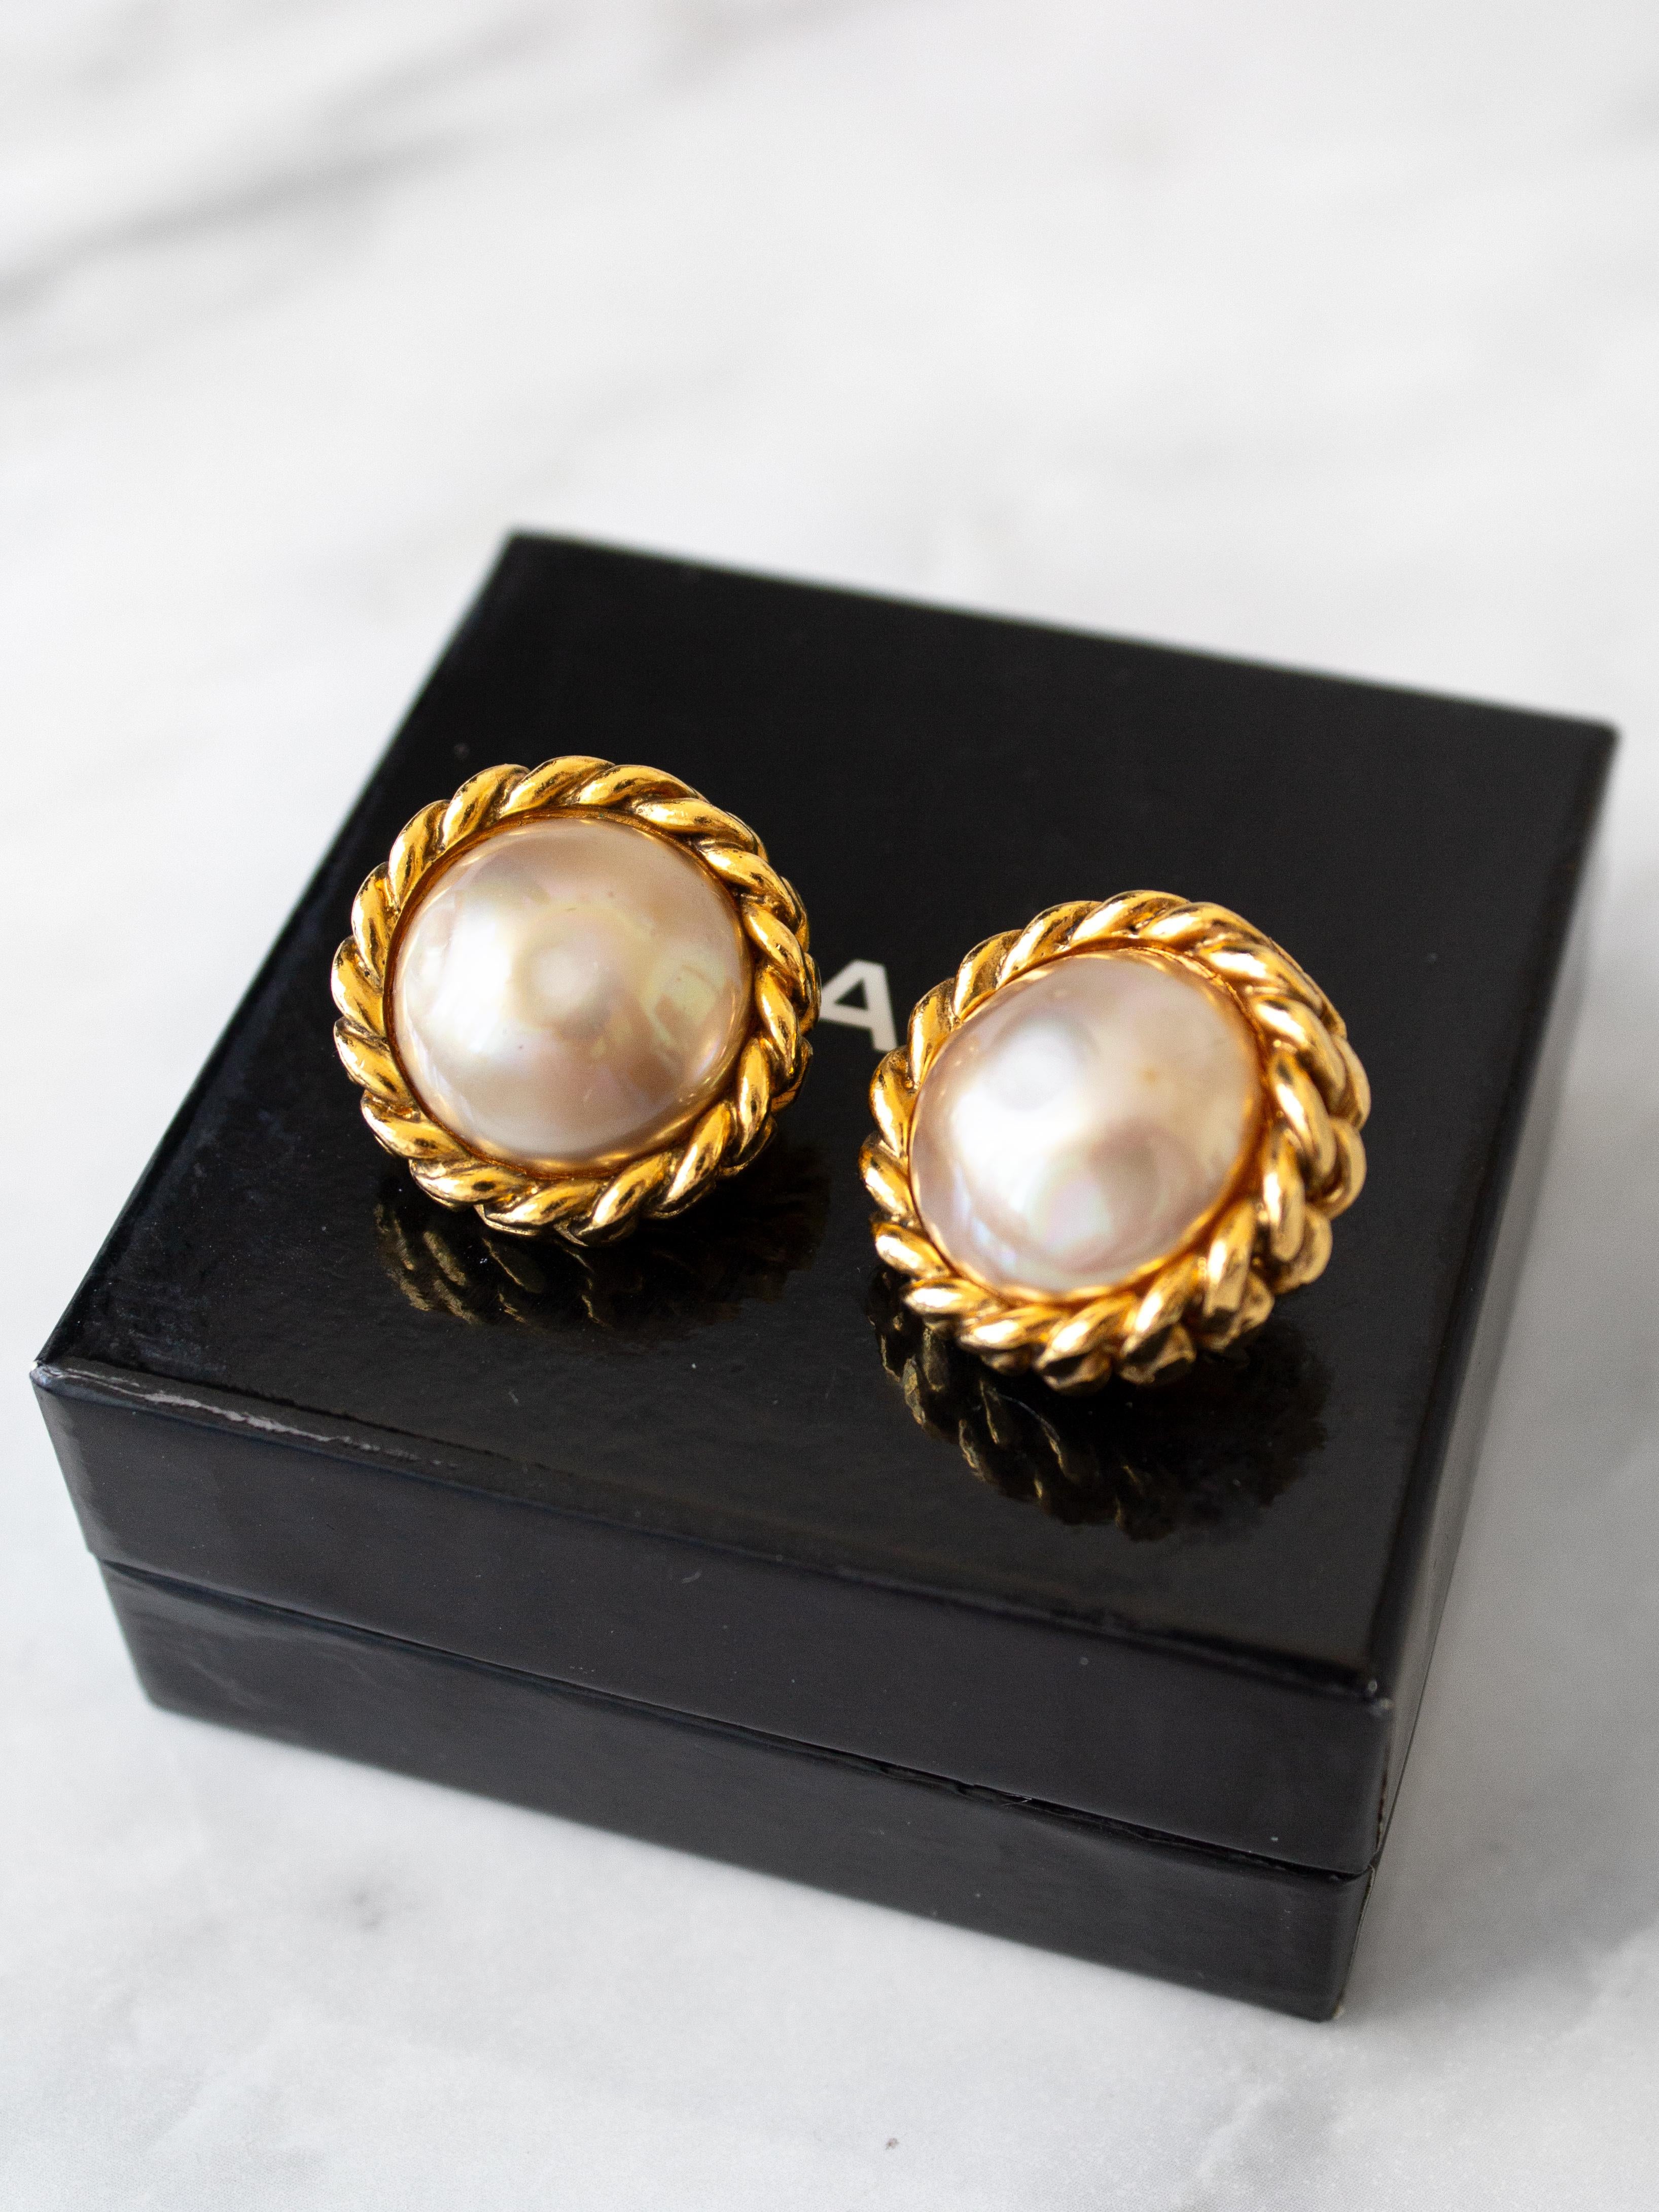 chanel earrings 18k gold